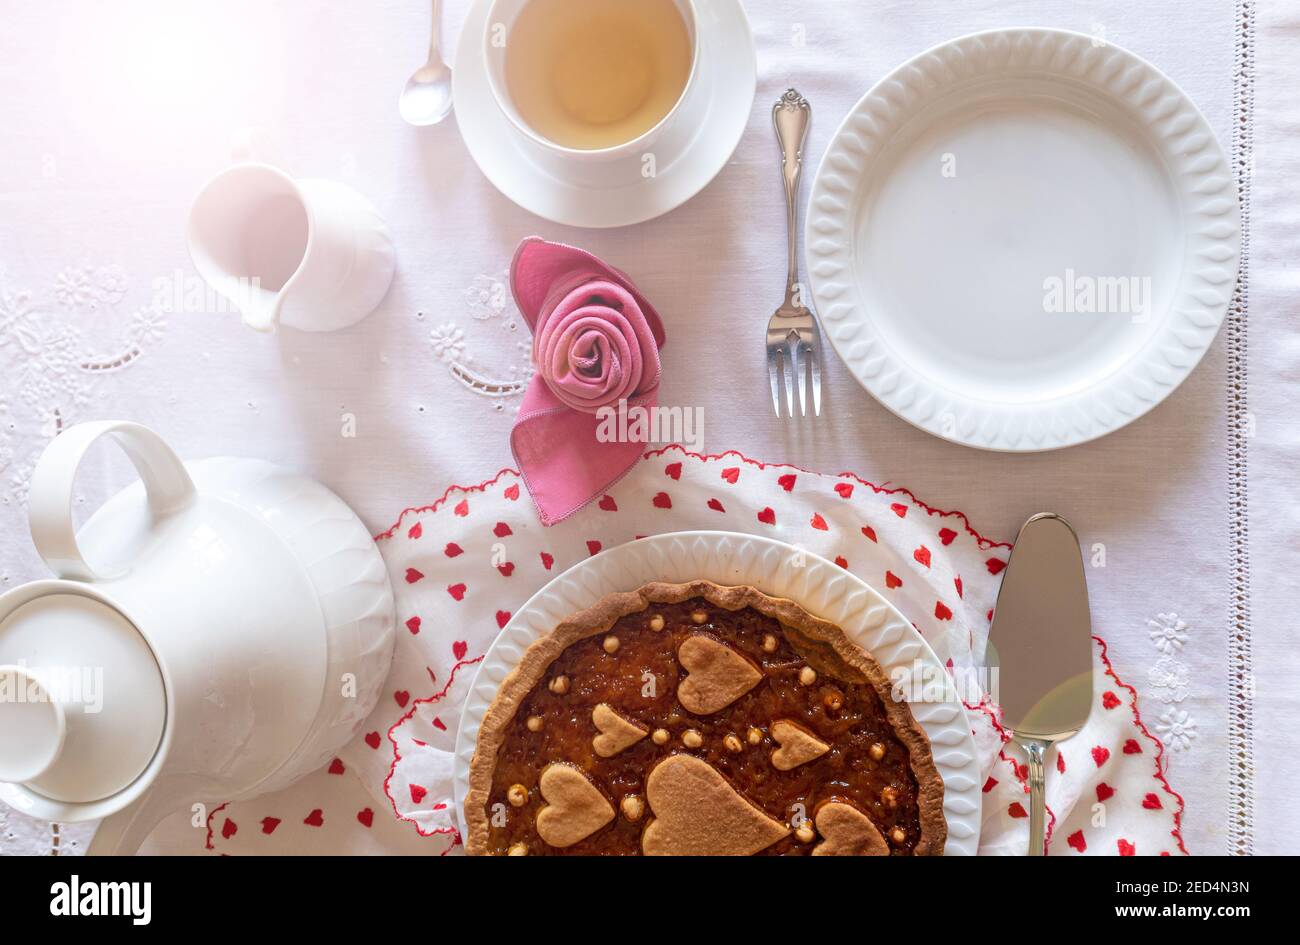 Ein Tisch für ein besonderes Frühstück. Eine orangefarbene Tarte auf einem Valentinsstoff wird mit einer Tasse Tee neben einer Serviette serviert, die wie eine Rose gefaltet ist. Stockfoto